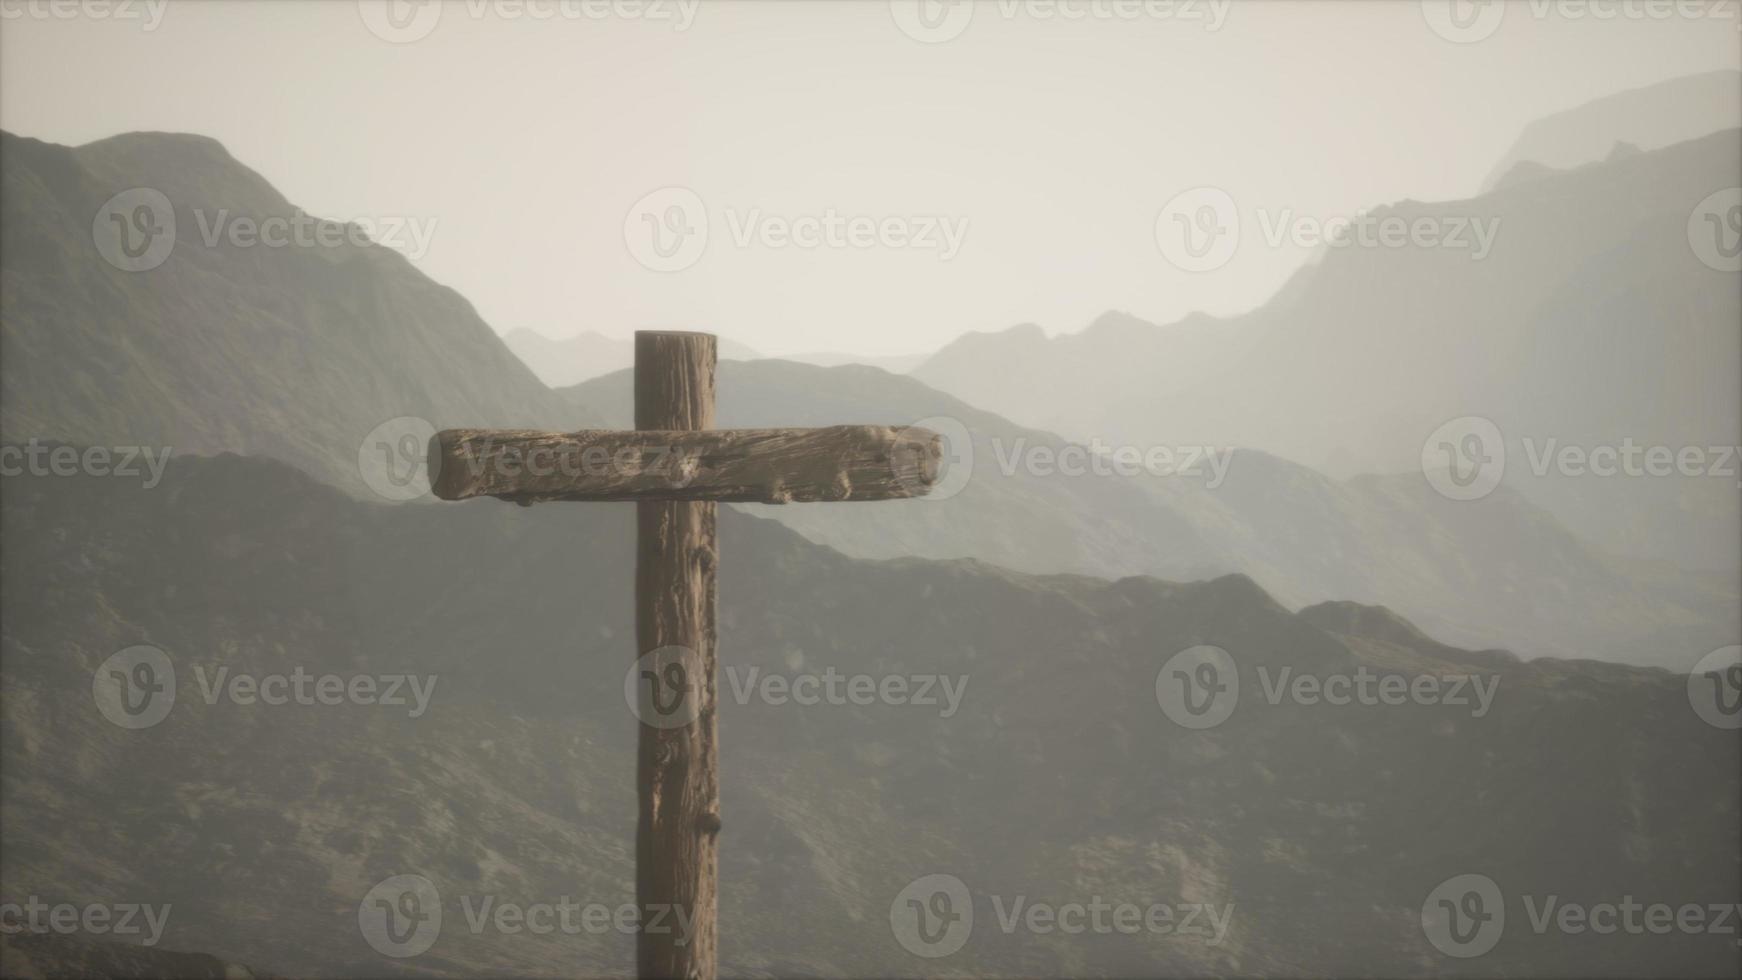 croce crocifisso in legno in montagna foto